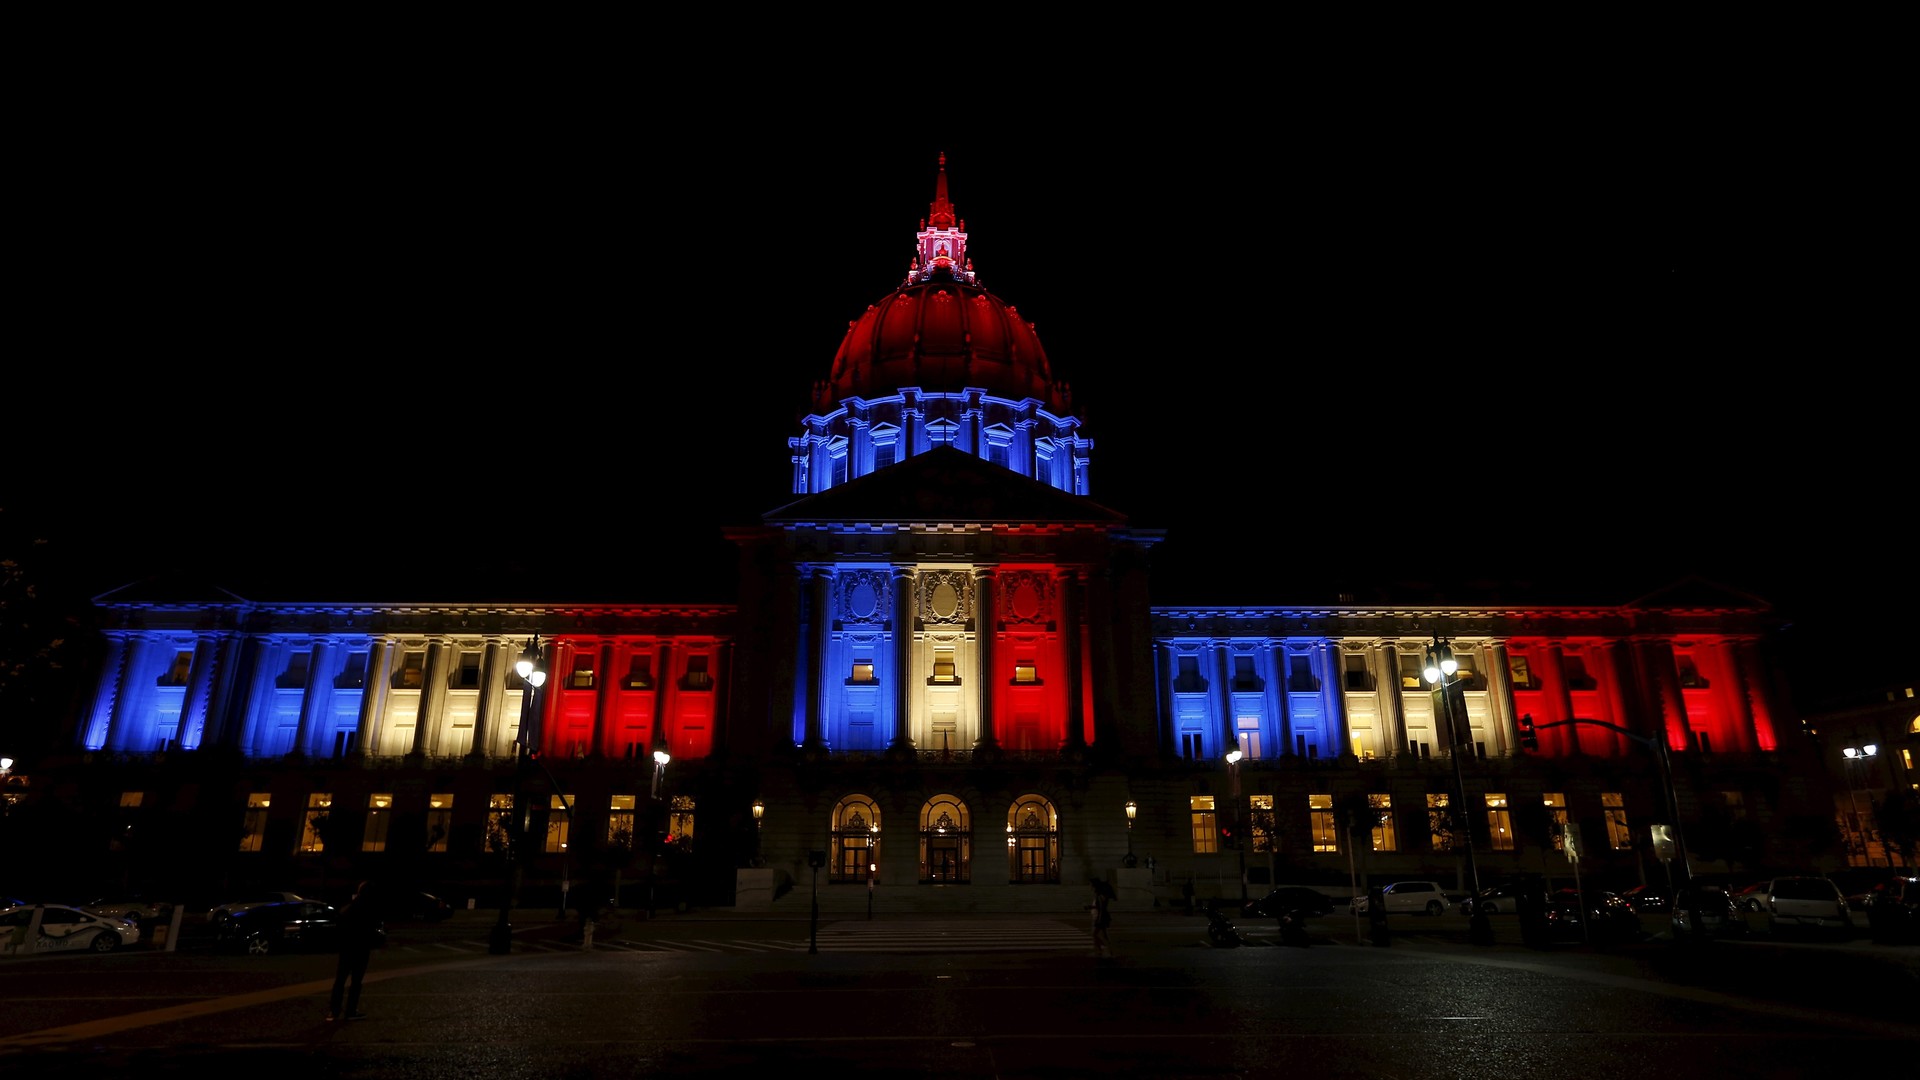 L’Hôtel de ville de San-Francisco est illuminé aux couleurs du drapeau français.